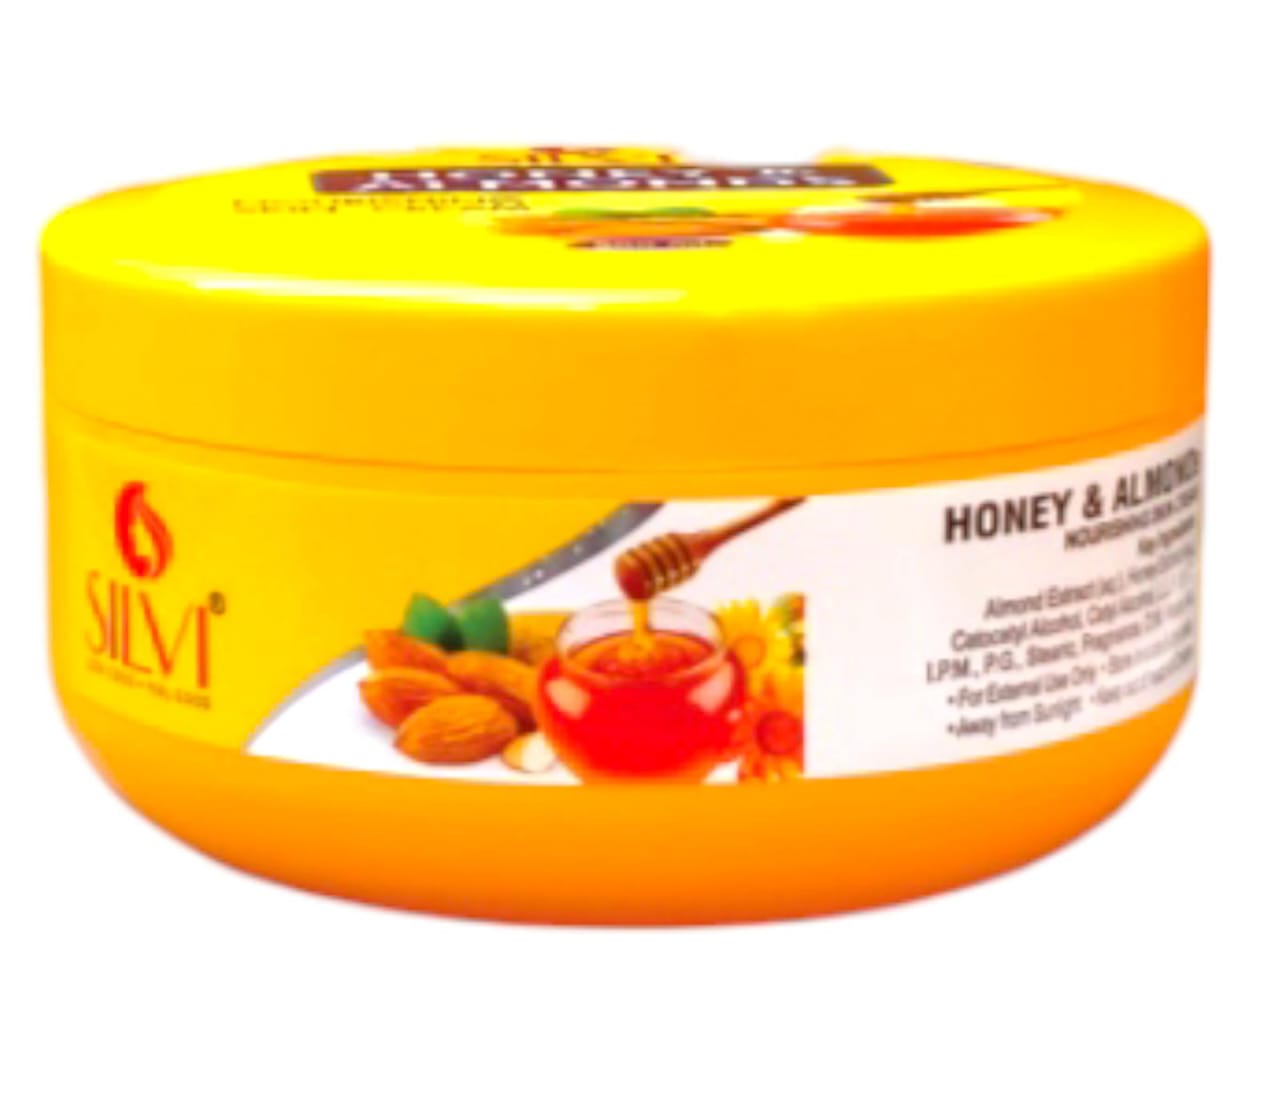 Honey almonds cream 